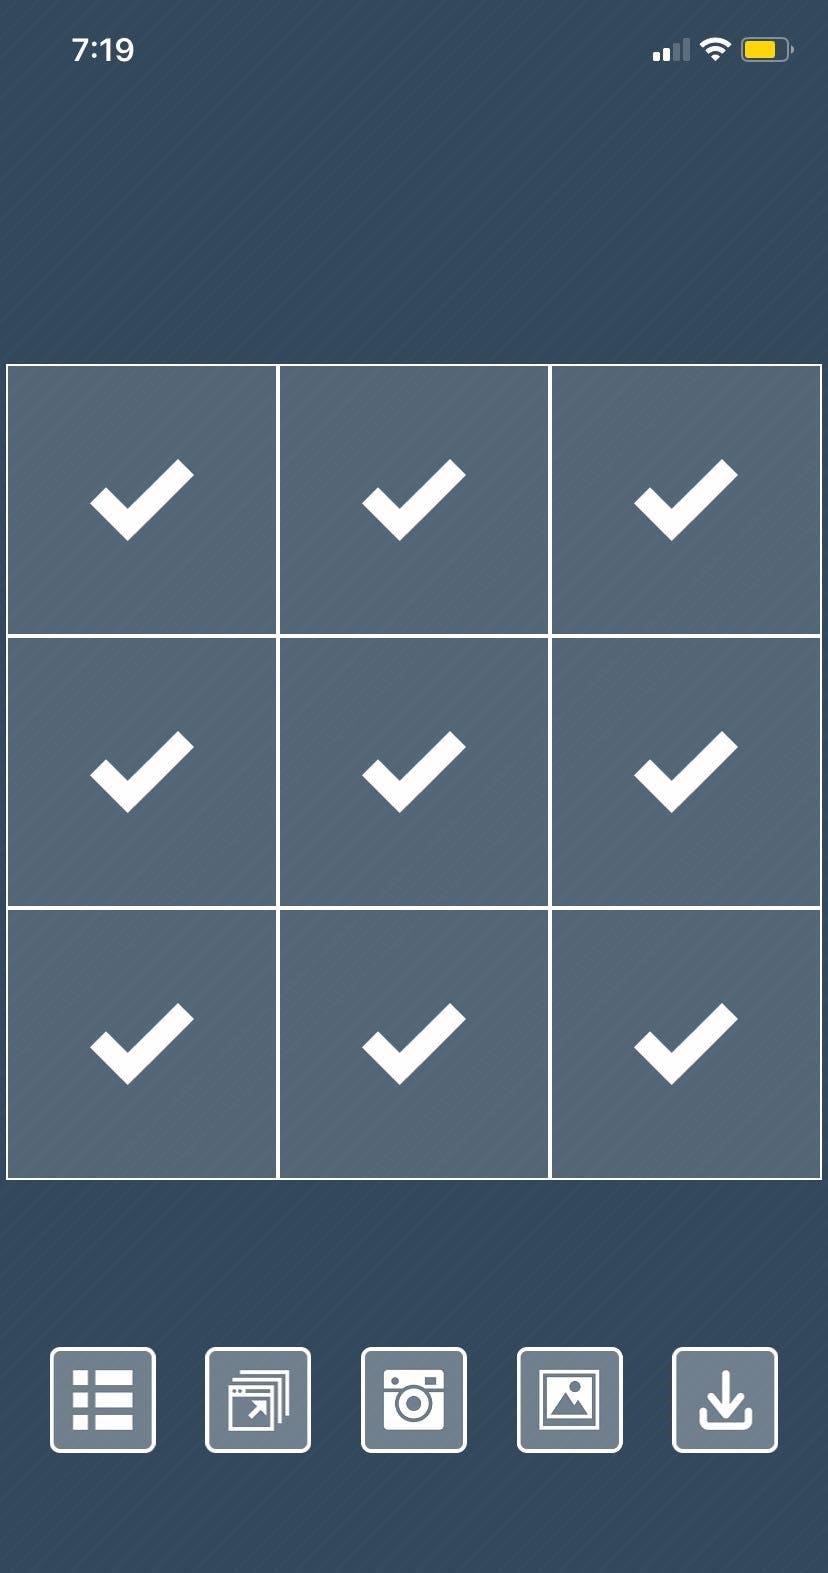 Mosaico para Instagram: como fazer com o Grid Post